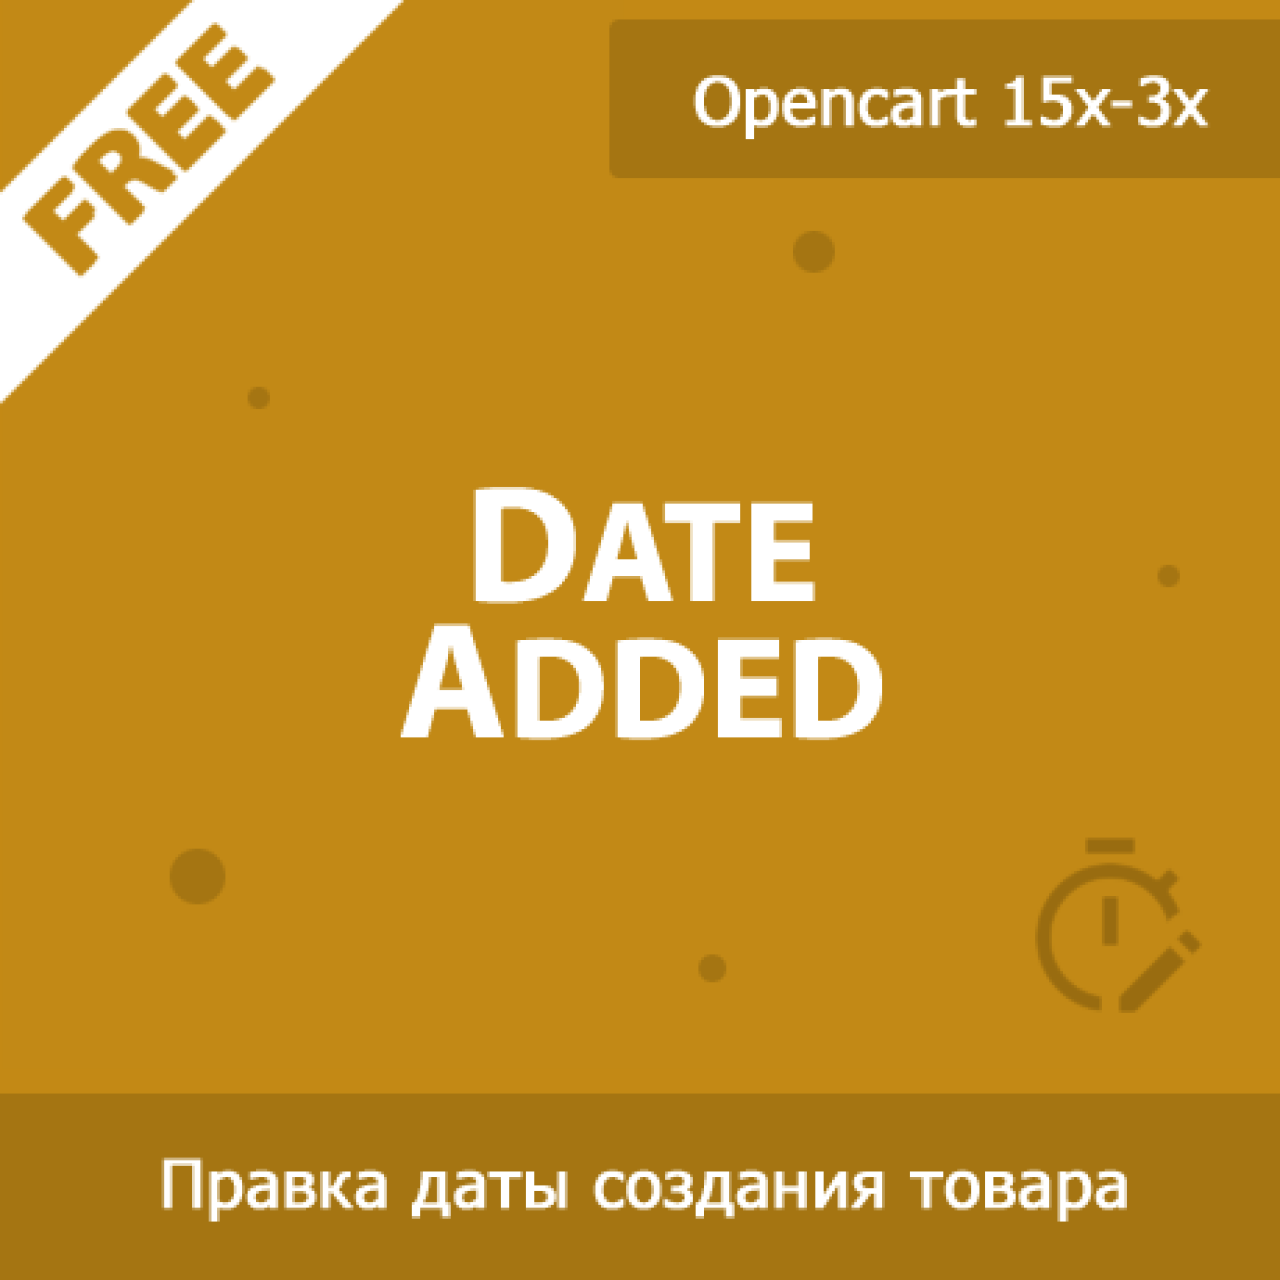 DateAdded - изменение даты создания товара из категории Админка для CMS OpenCart (ОпенКарт)